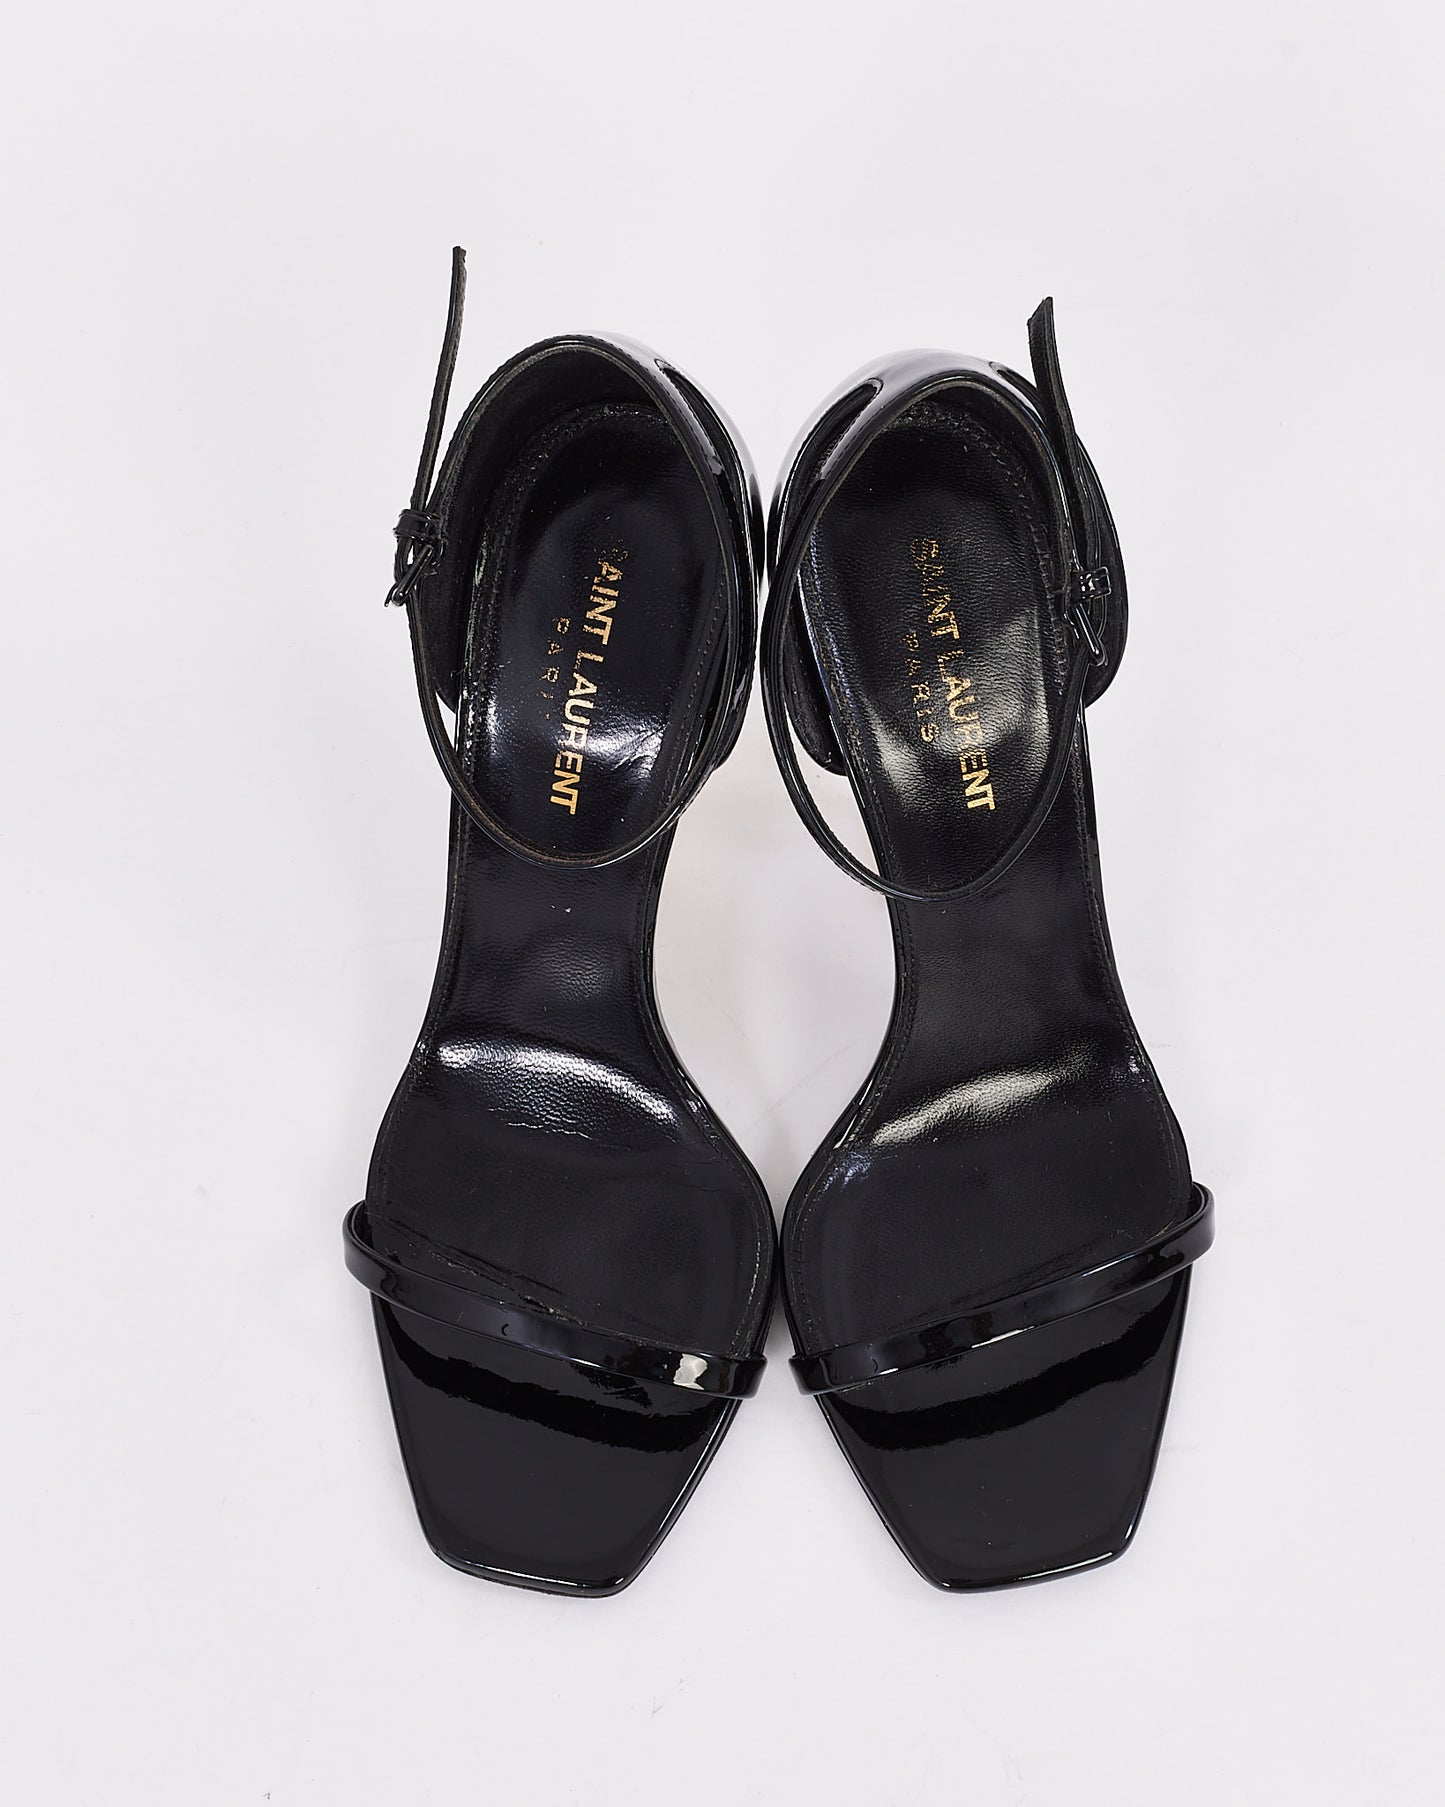 Saint Laurent Black Patent Leather YSL Opyum Sandals - 38.5